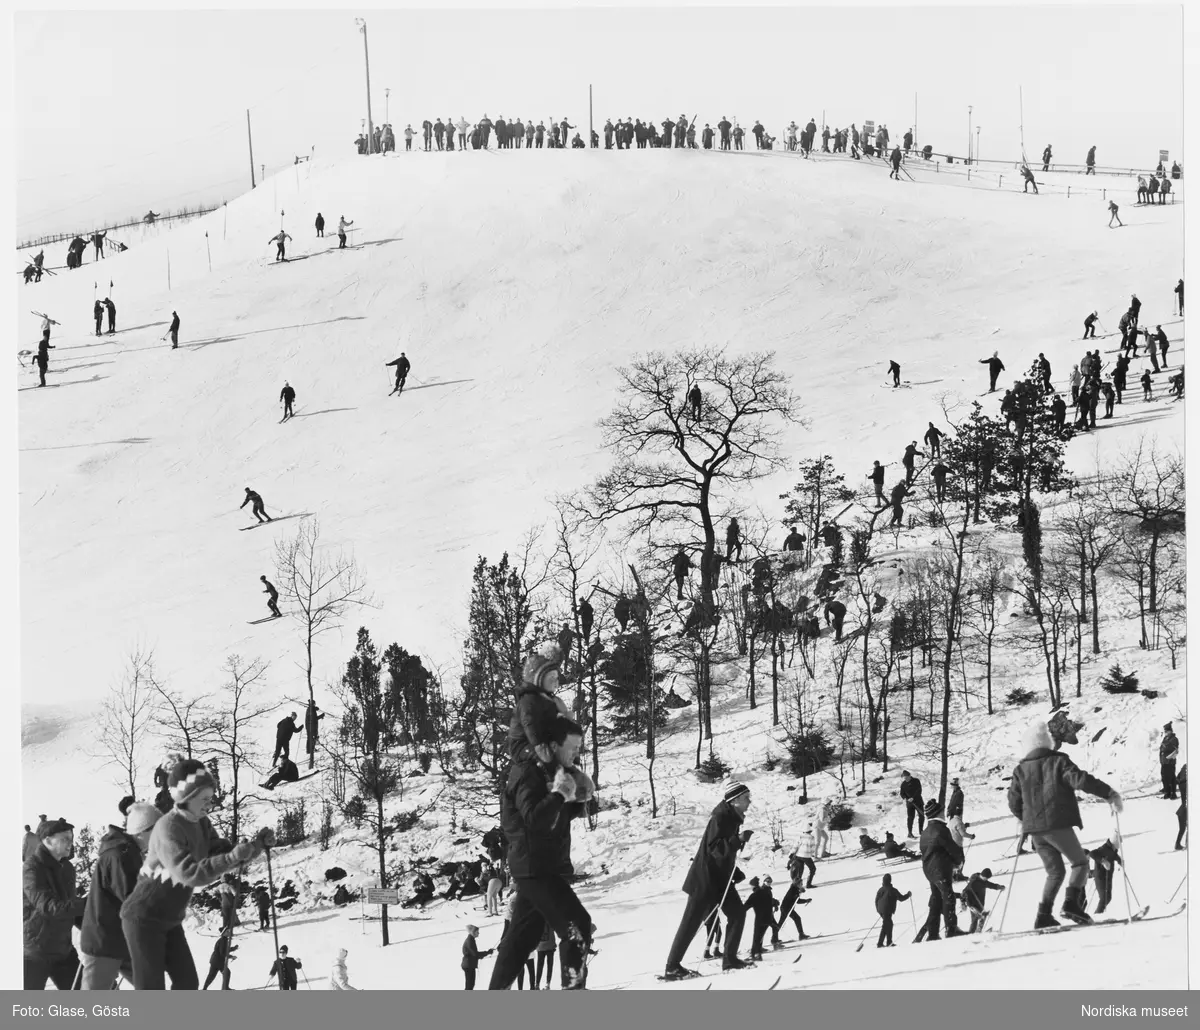 Högdalstoppen 1 i södra Stockholm med skidåkare, 1960-tal. Skidlift anlades år 1966 och revs 1996. Även rodel och snowboard har åkts i backen. Sedan 2005 finns en frisbeegolfbana på toppen.